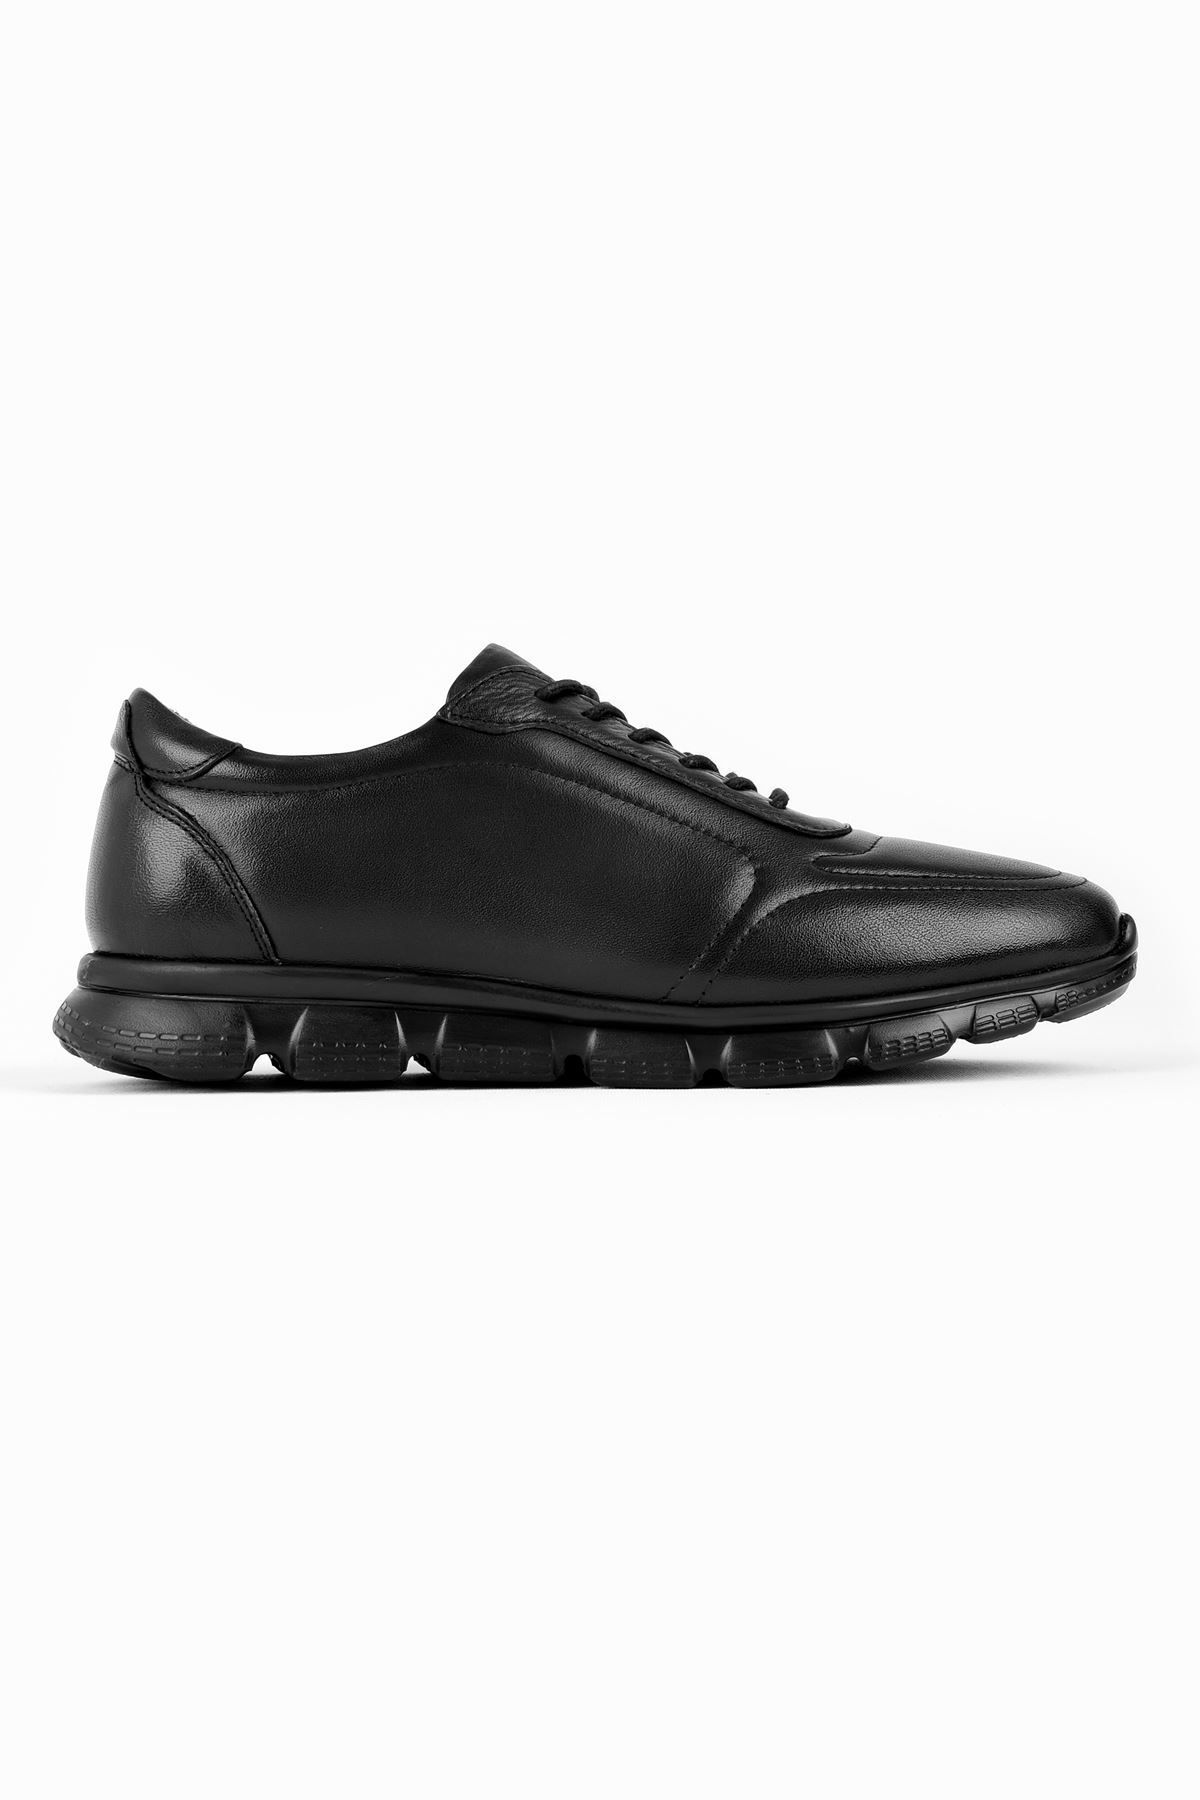 LAL SHOES & BAGS Almo Erkek Hakiki Deri Bağcıklı Günlük Ayakkabı-siyah